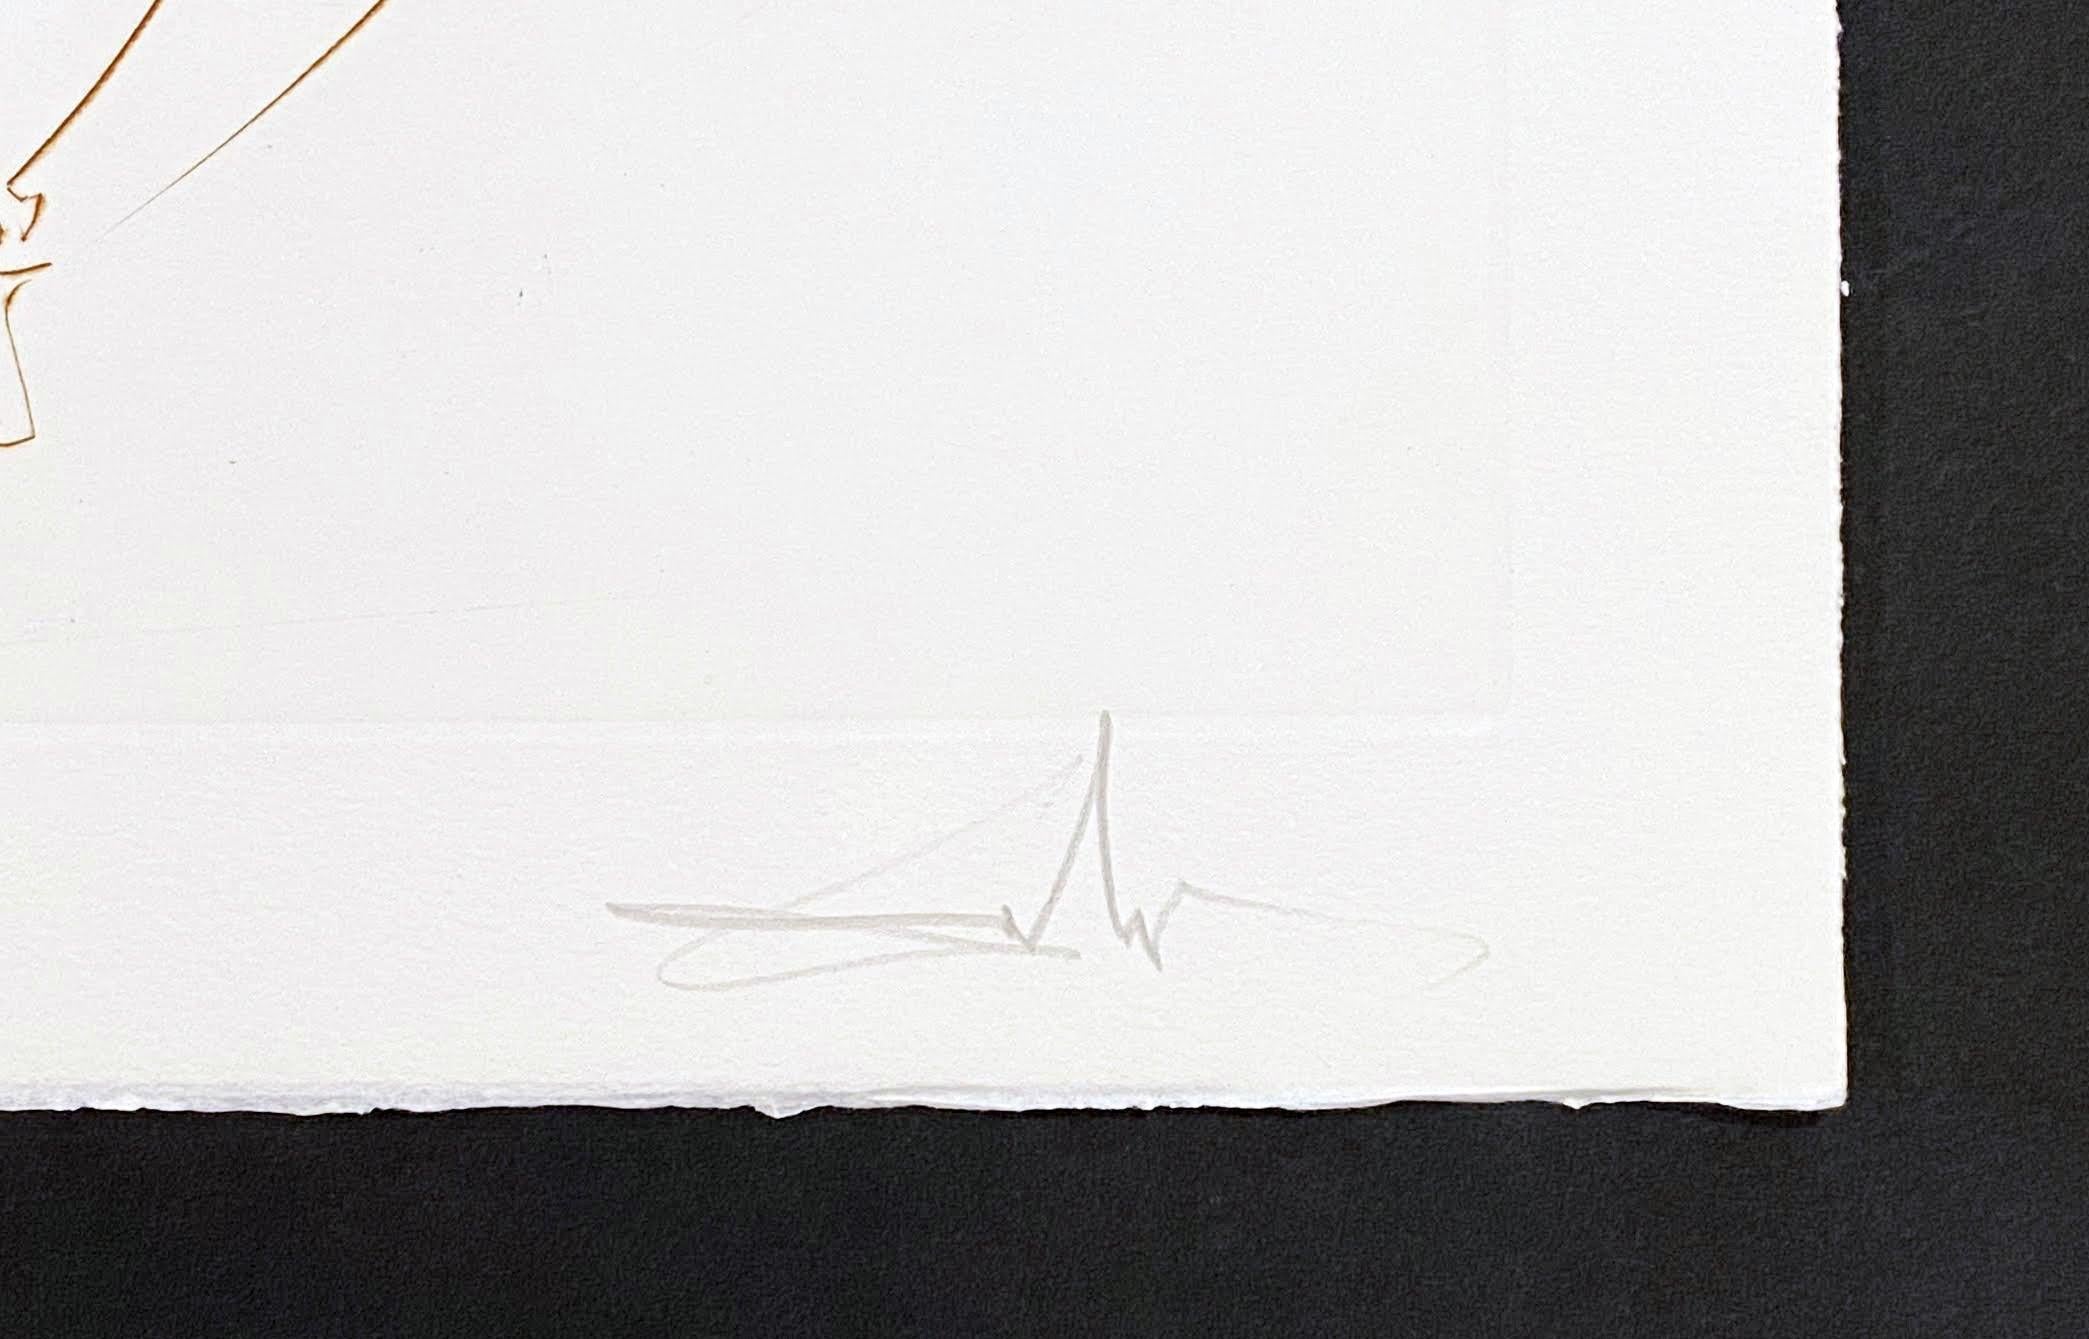 Künstler: Salvador Dali
Titel: Der Pass von Gadalore
Mappe: Die Suche nach dem Gral
Medium: Radierung in Farbe
Jahr: 1975
Auflage: 39/100
Rahmengröße: 27